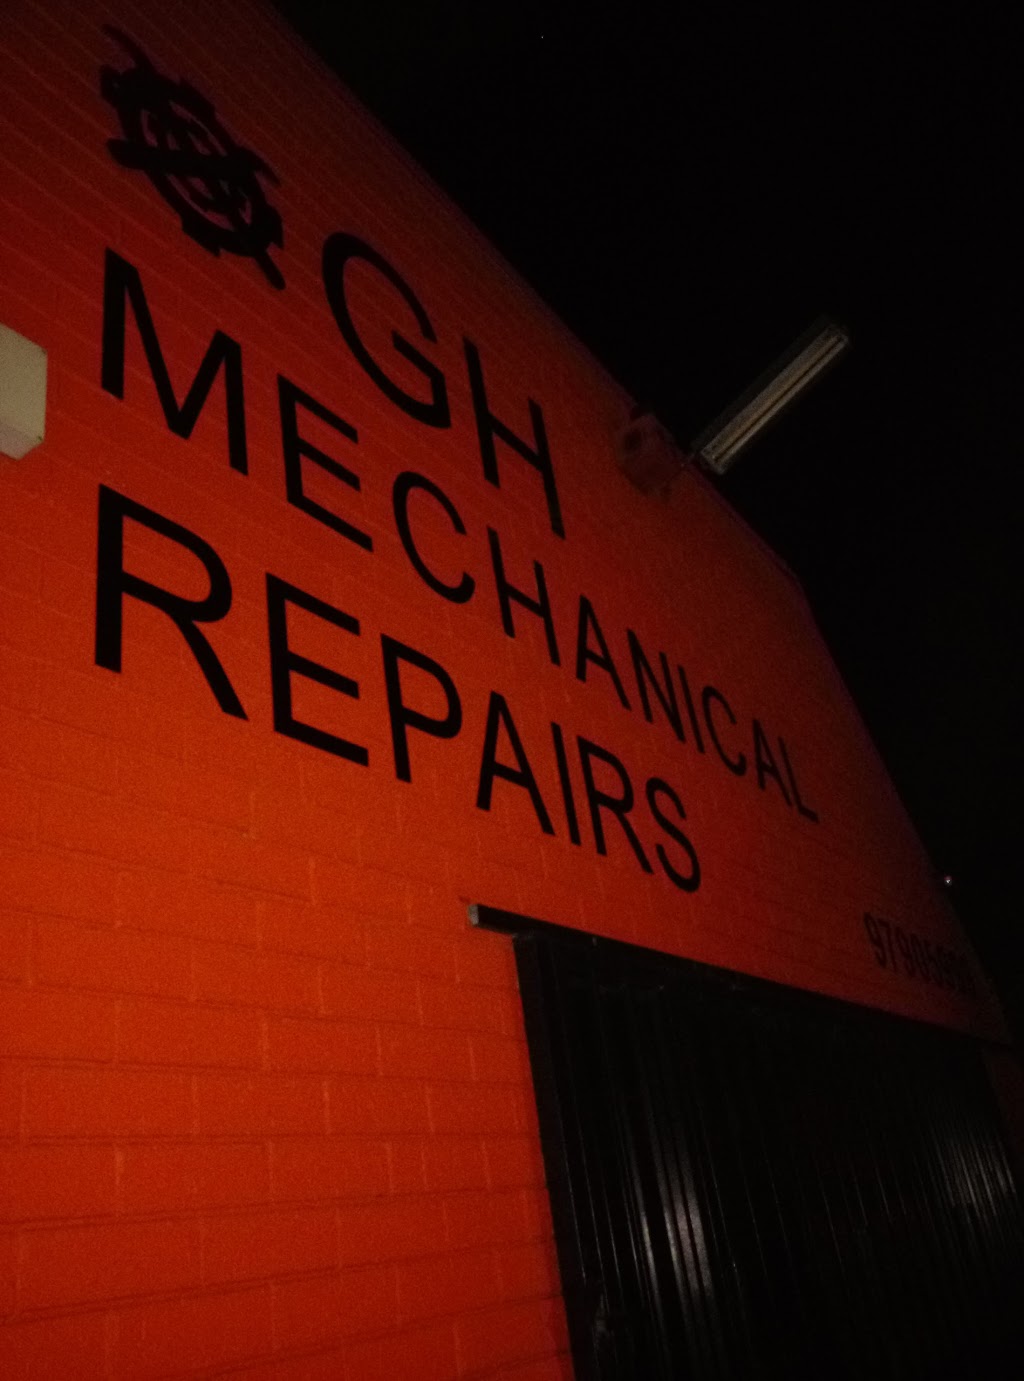 GH Mechanical Repairs | car repair | 866 Punchbowl Rd, Punchbowl NSW 2196, Australia | 0297905999 OR +61 2 9790 5999